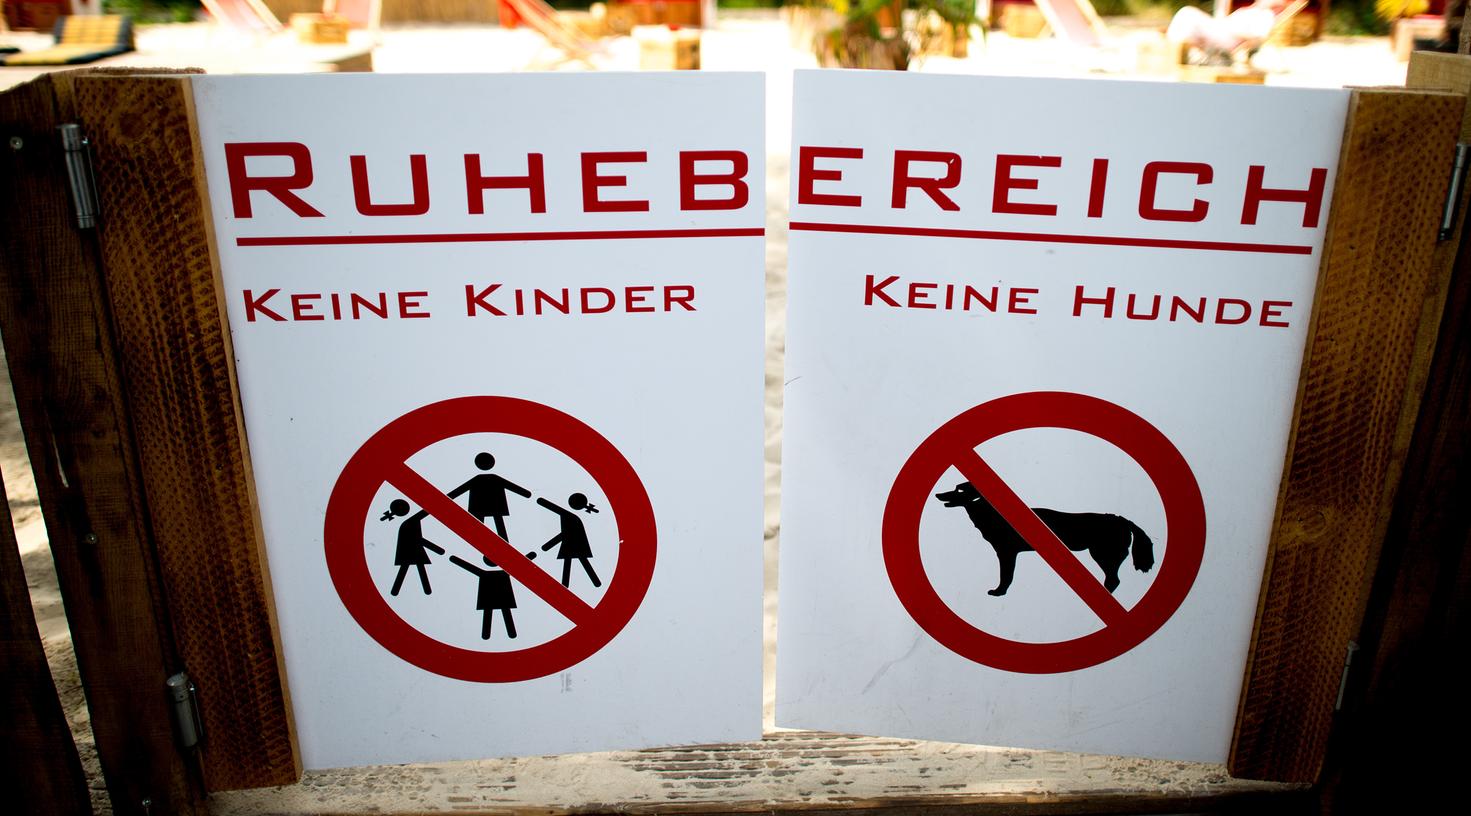 Keine Kinder, keine Hunde, sondern Ruhezone - dieses Vorgehen eines Düsseldorfer Wirts ärgert auch Eltern in Nürnberg.